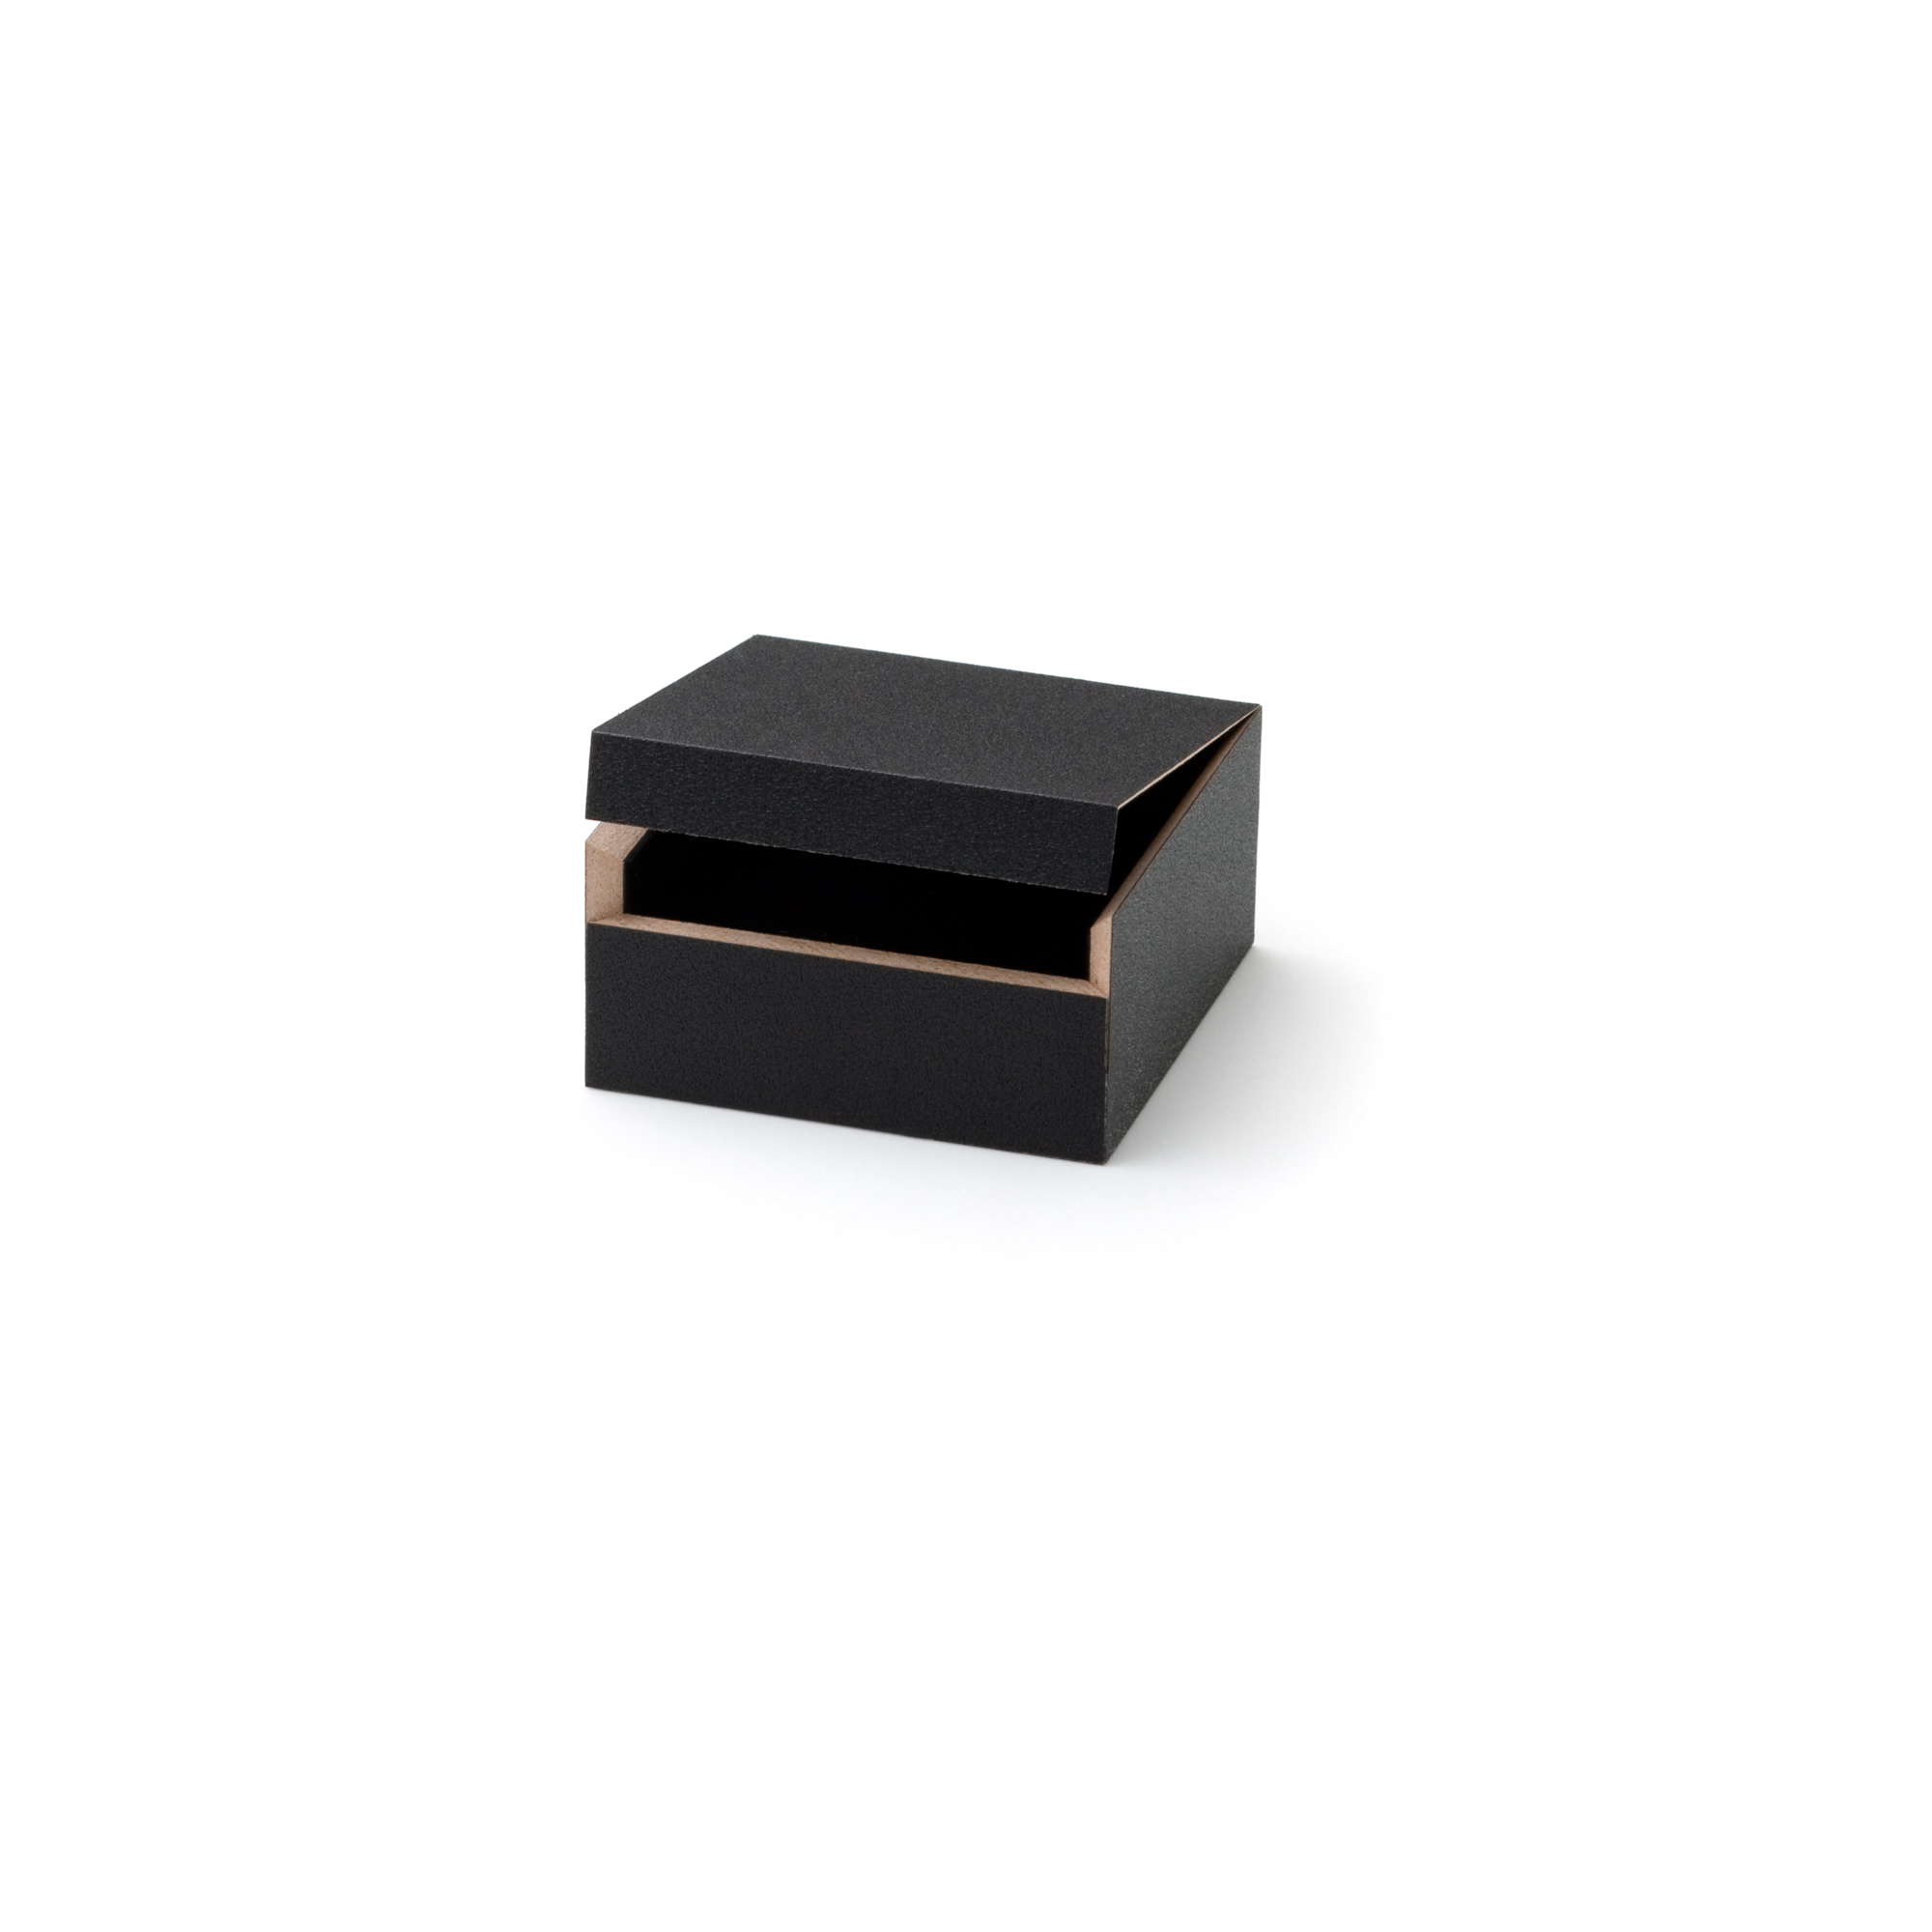 Blackbox Universal small, 60 x 60 x 30 mm